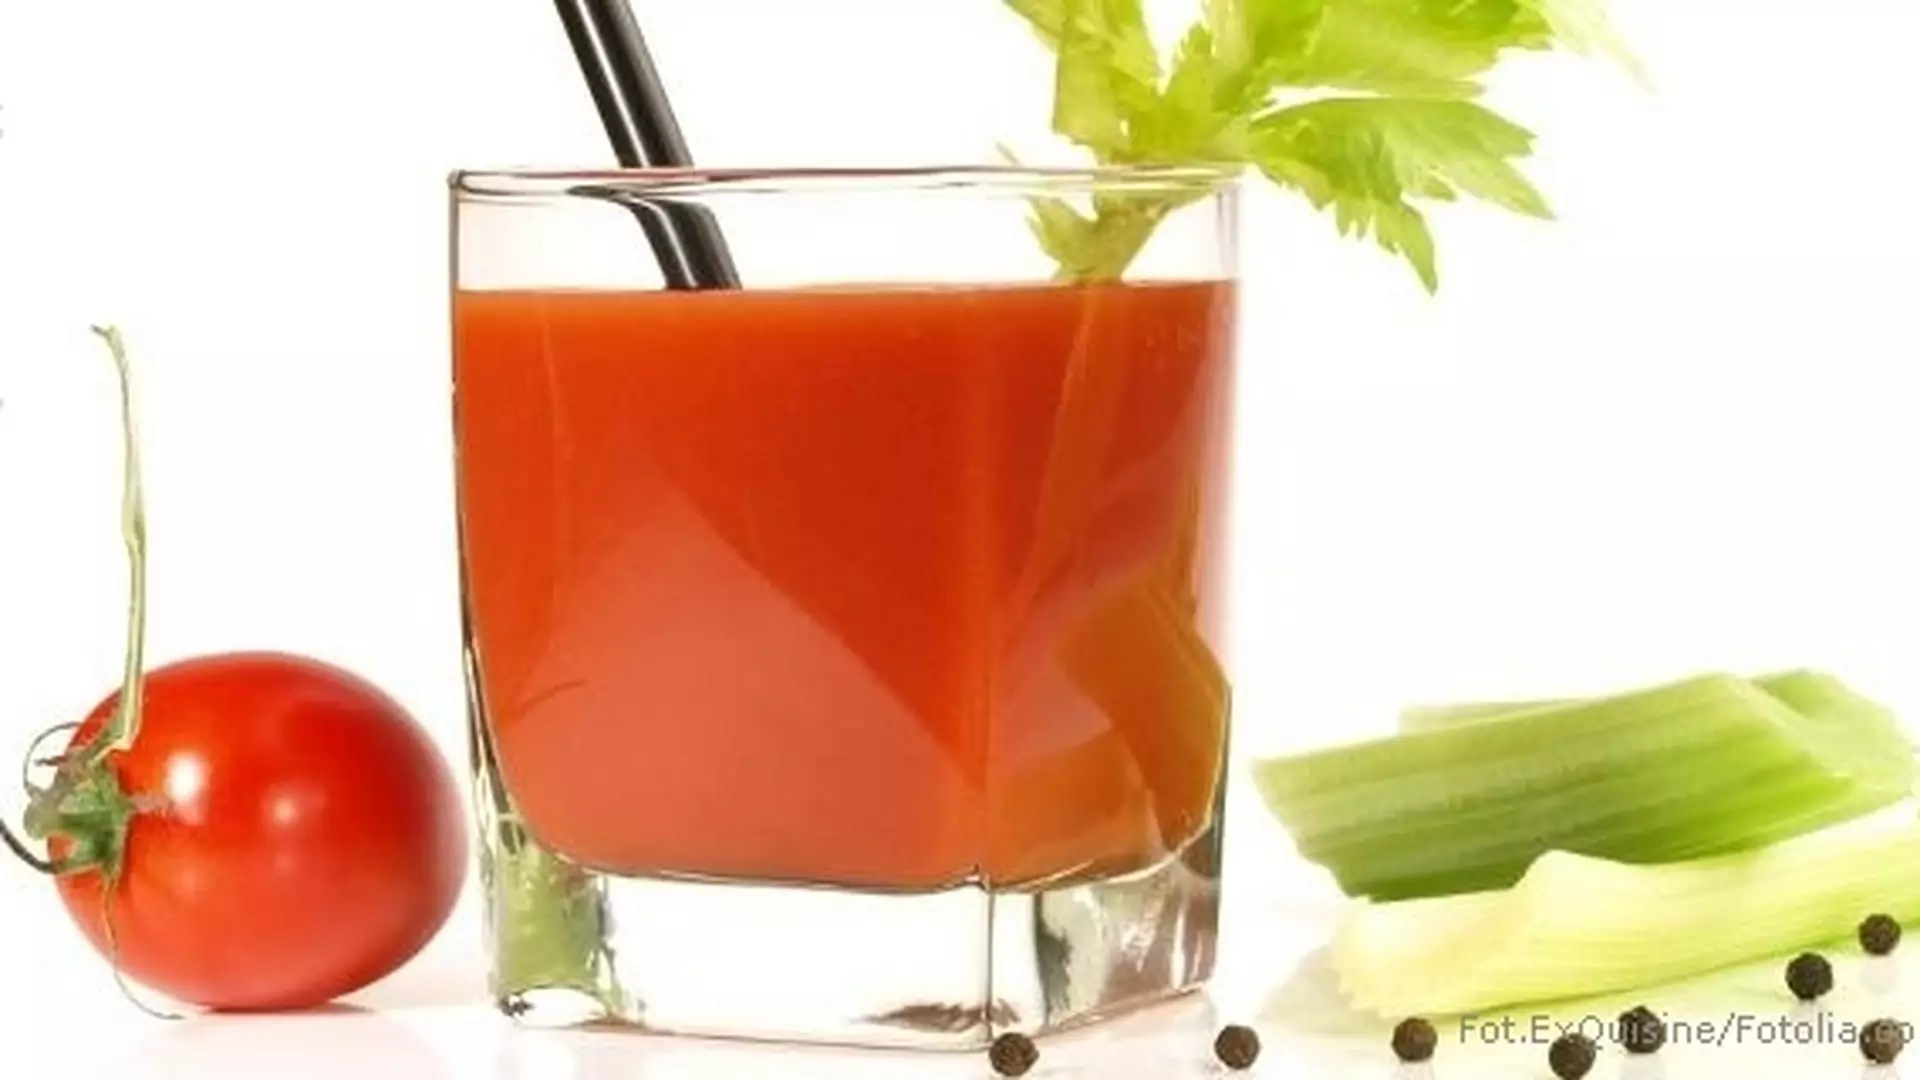 Codzienny zastrzyk likopenu: sok pomidorowy